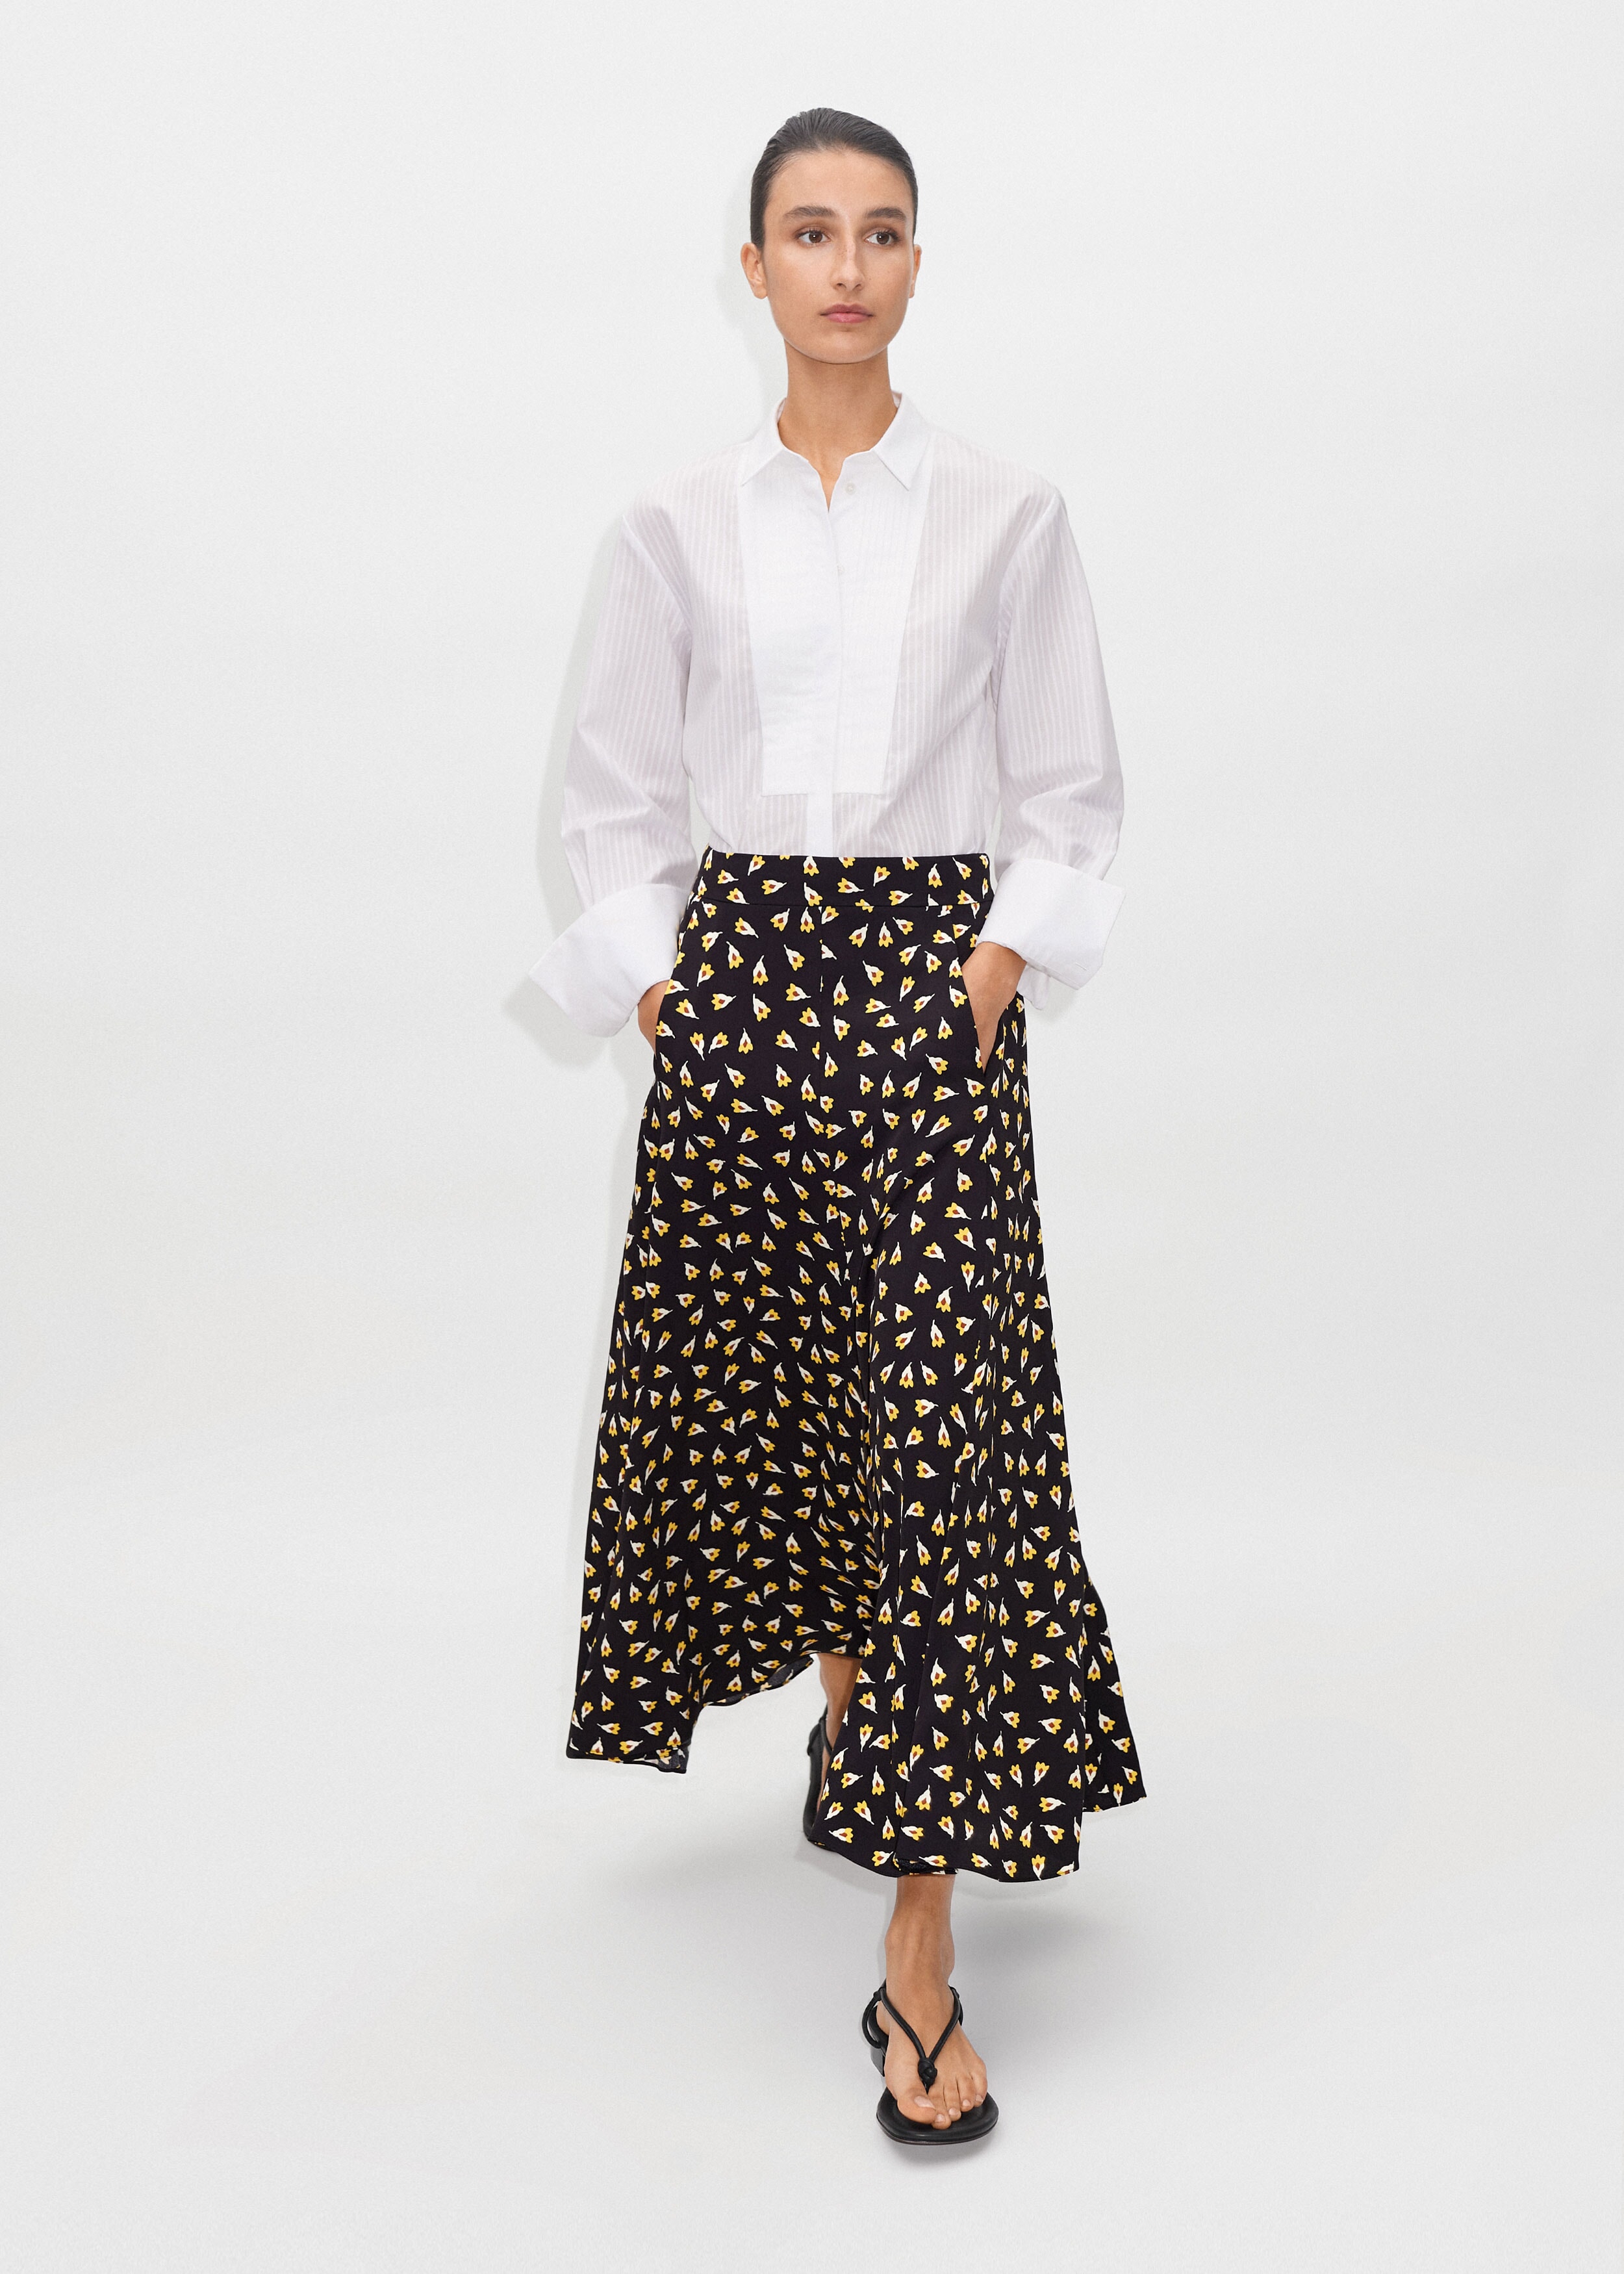 Flower Bud Print Flared Skirt Black/Yellow/Light Cream